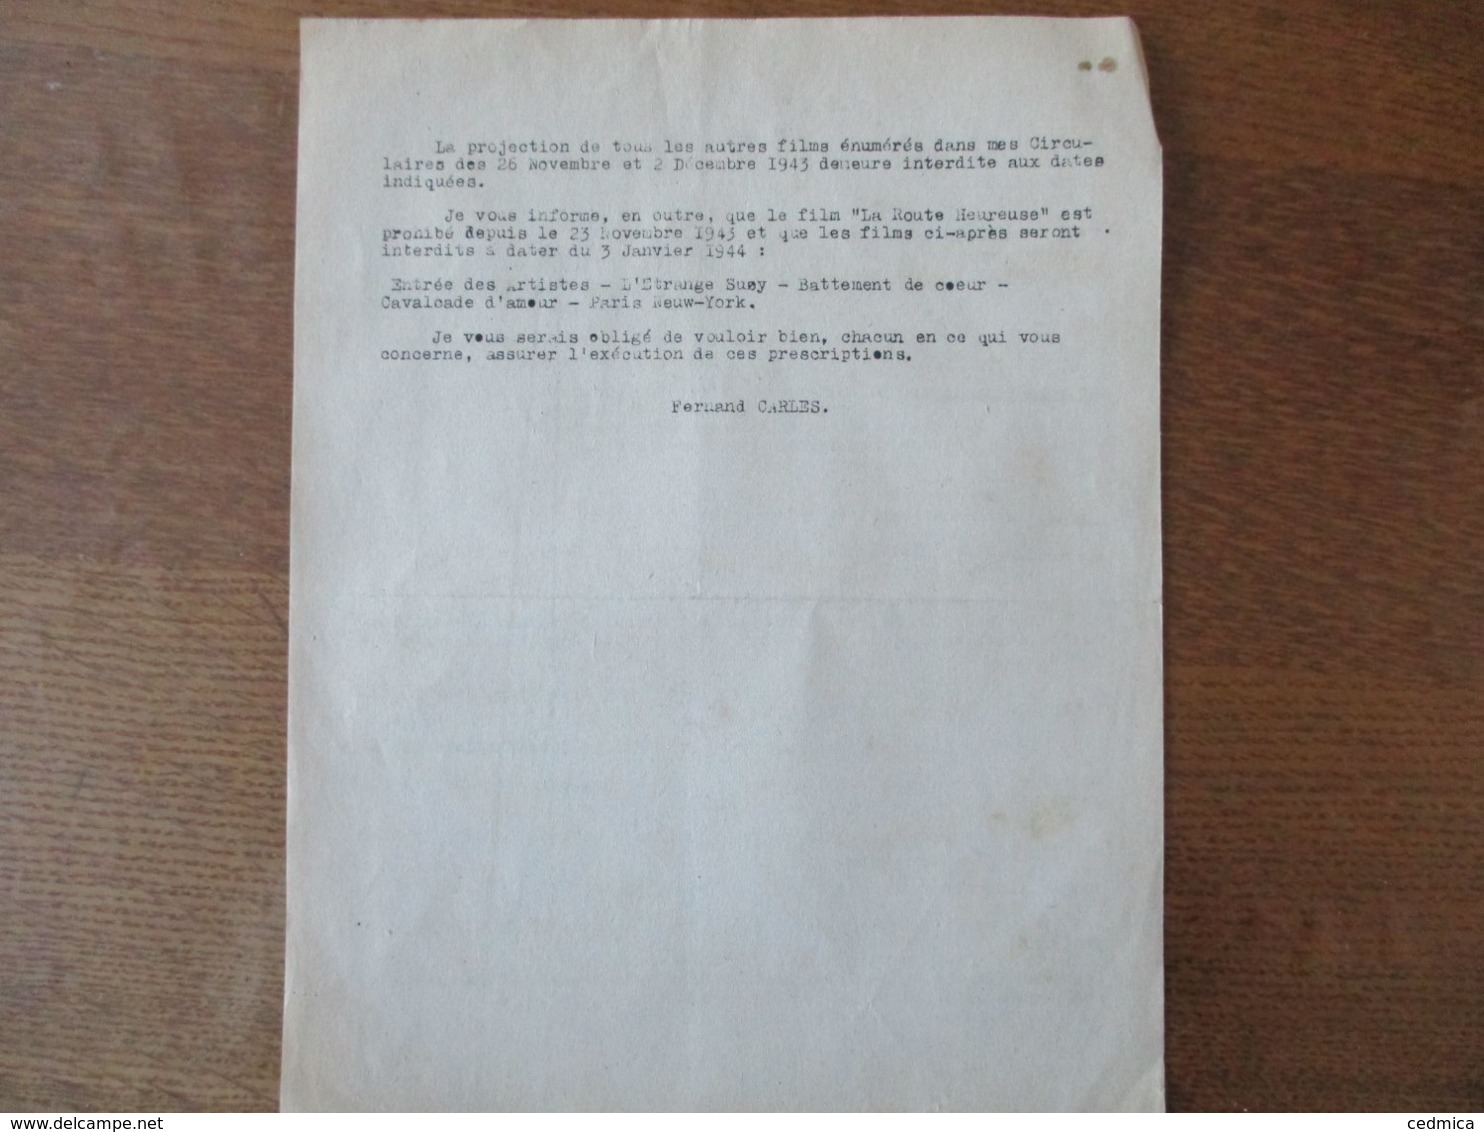 ETAT FRANCAIS LILLE LE 18 DECEMBRE 1943 PREFECTURE DU NORD NOTE DU PREFET CINEMATOGRAPHIE-INTERDICTION DE FILMS - Historische Documenten